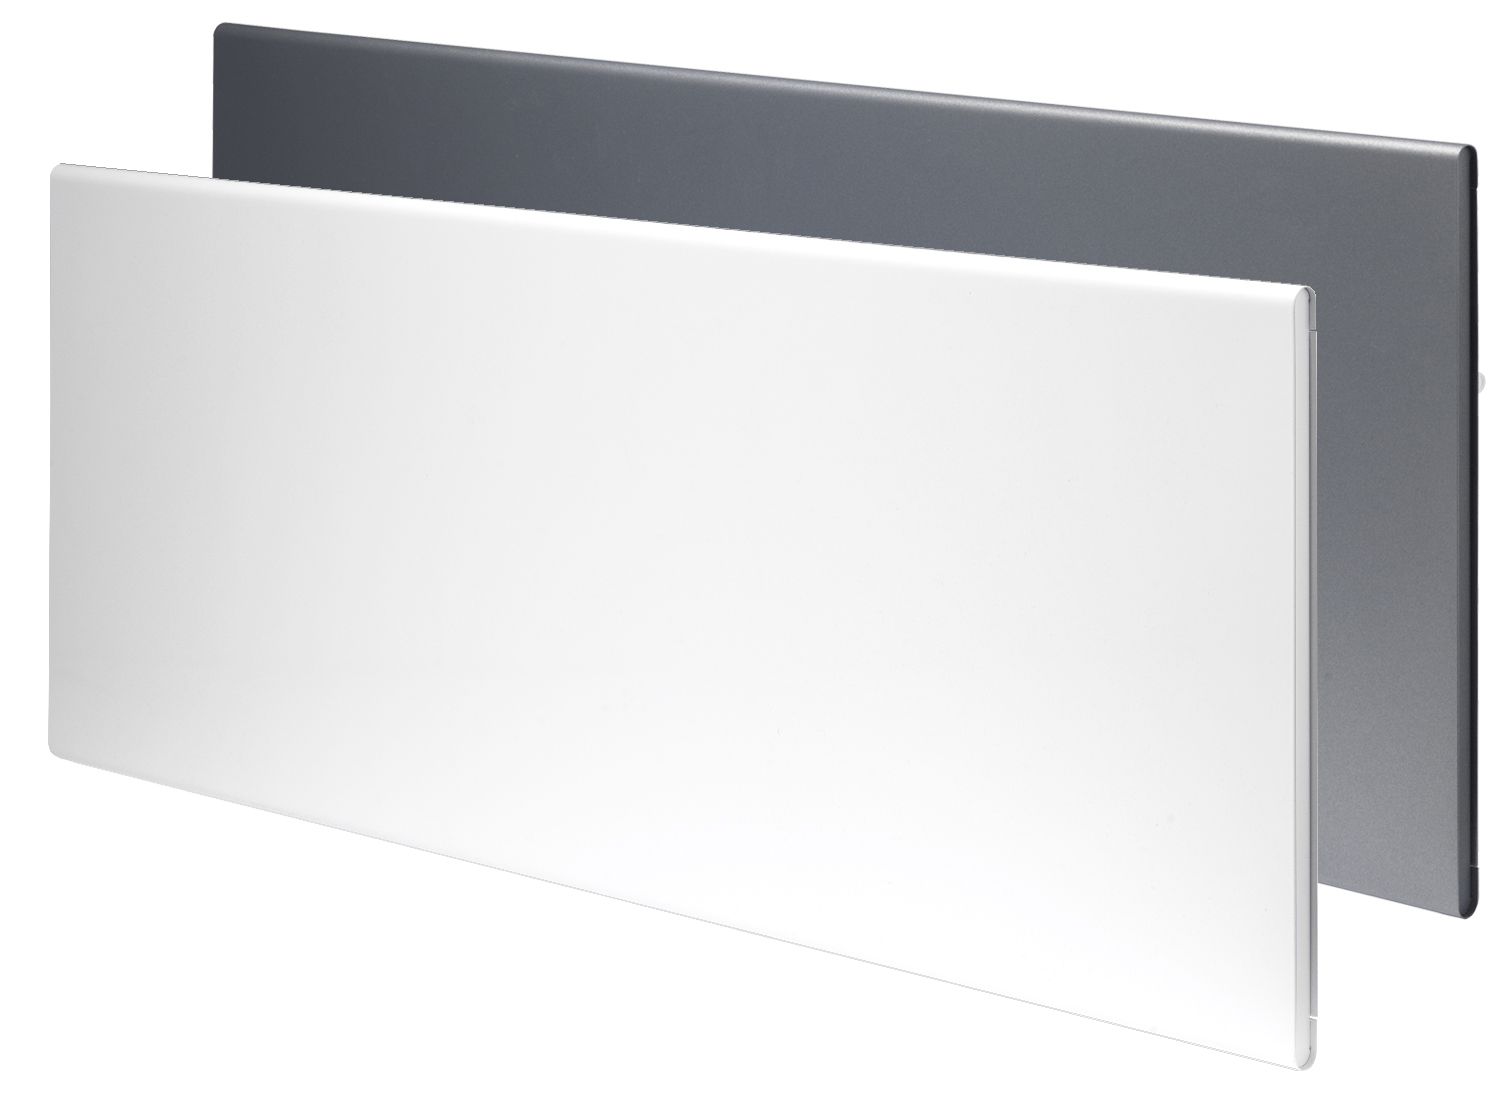 Θερμοπομποί ADAX Neo Compact WiFi - Άσπρο & Sparkling Grey